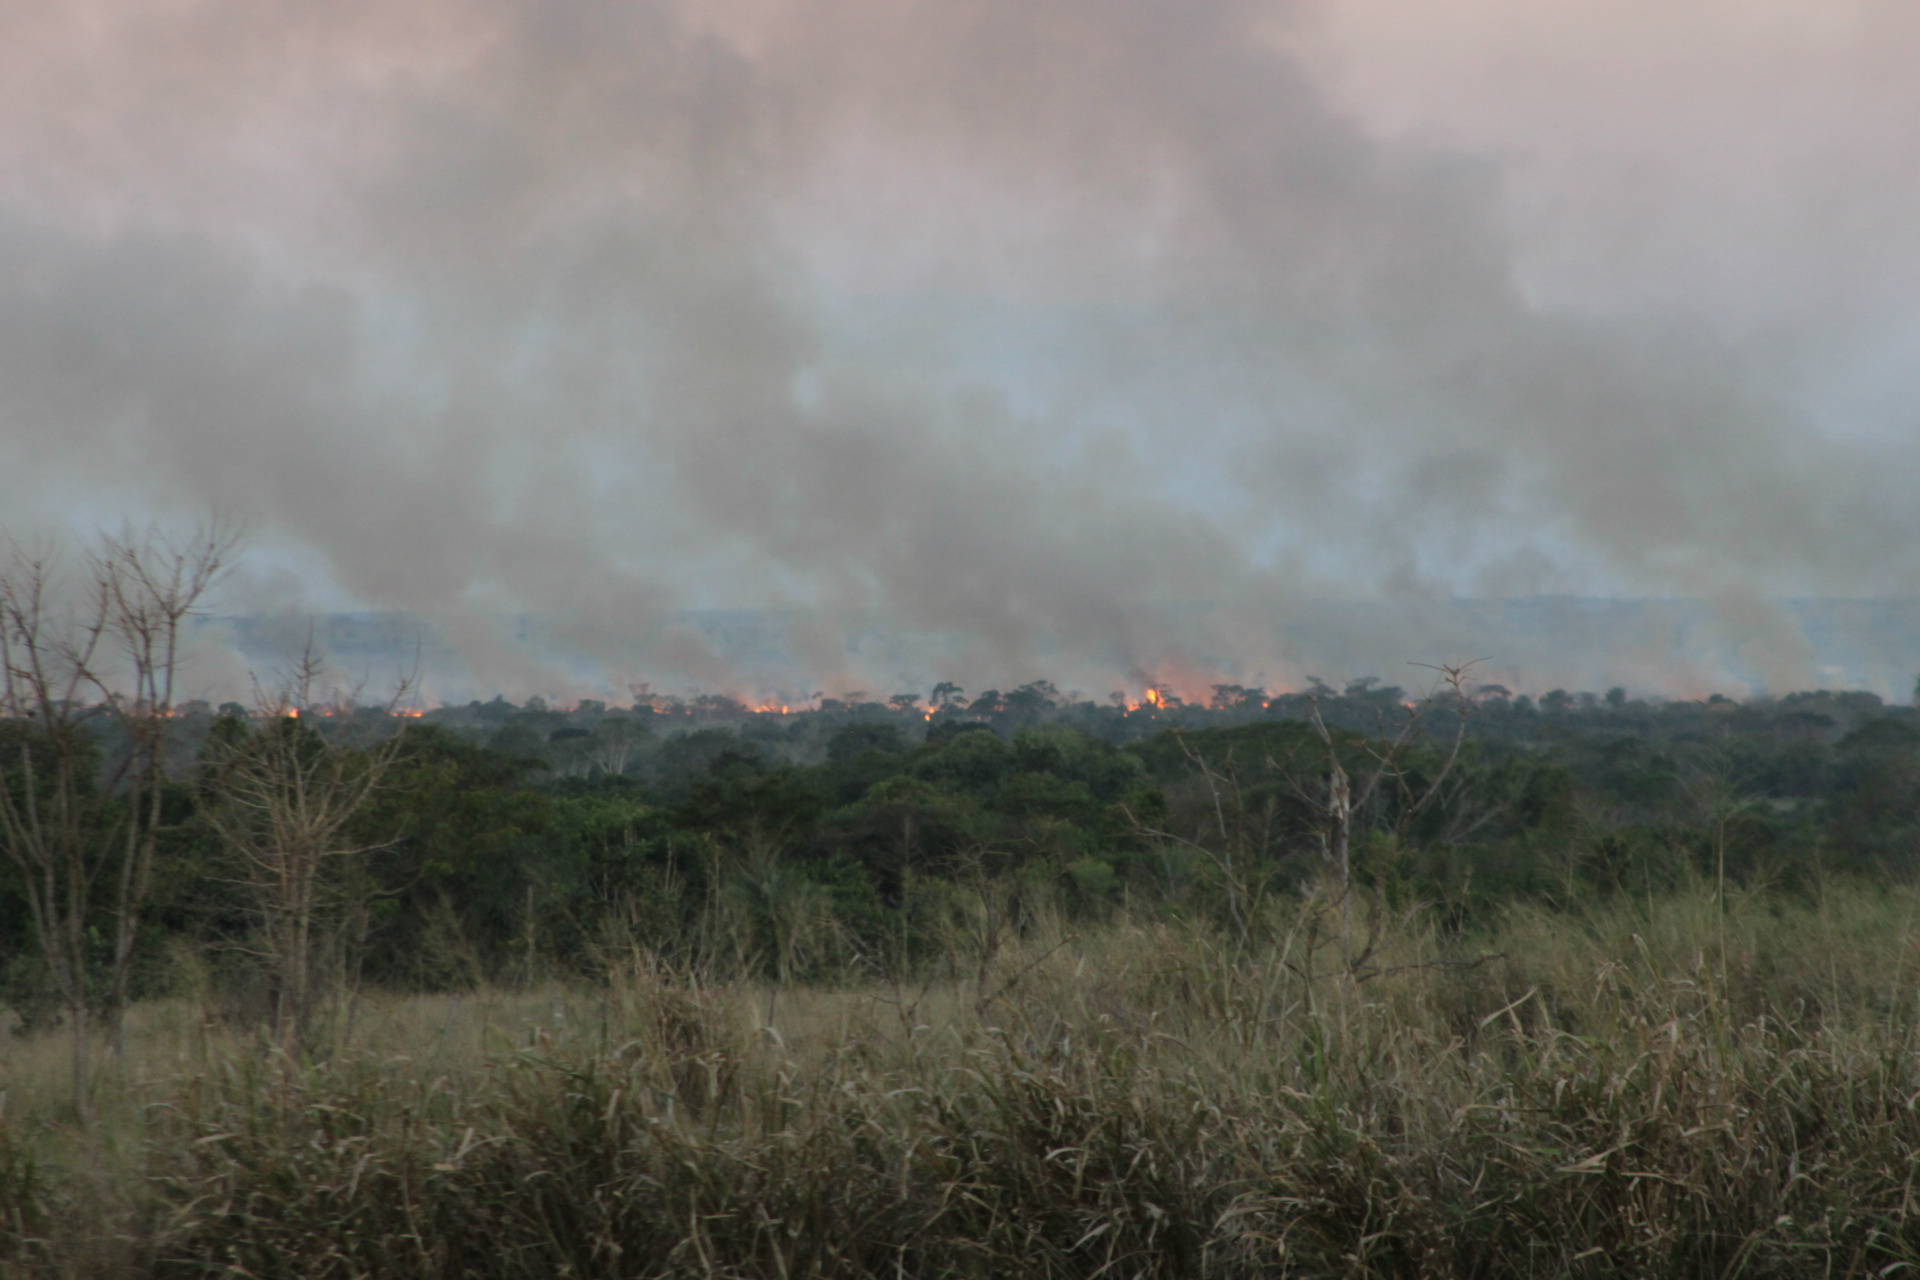 Dos fundos da região do Jardim dos Ipês, as lentes da câmera fotográfica conseguiram captar o incêndio, cujas chamas alcançam altura preocupante (Foto: Edivelton Kologi)